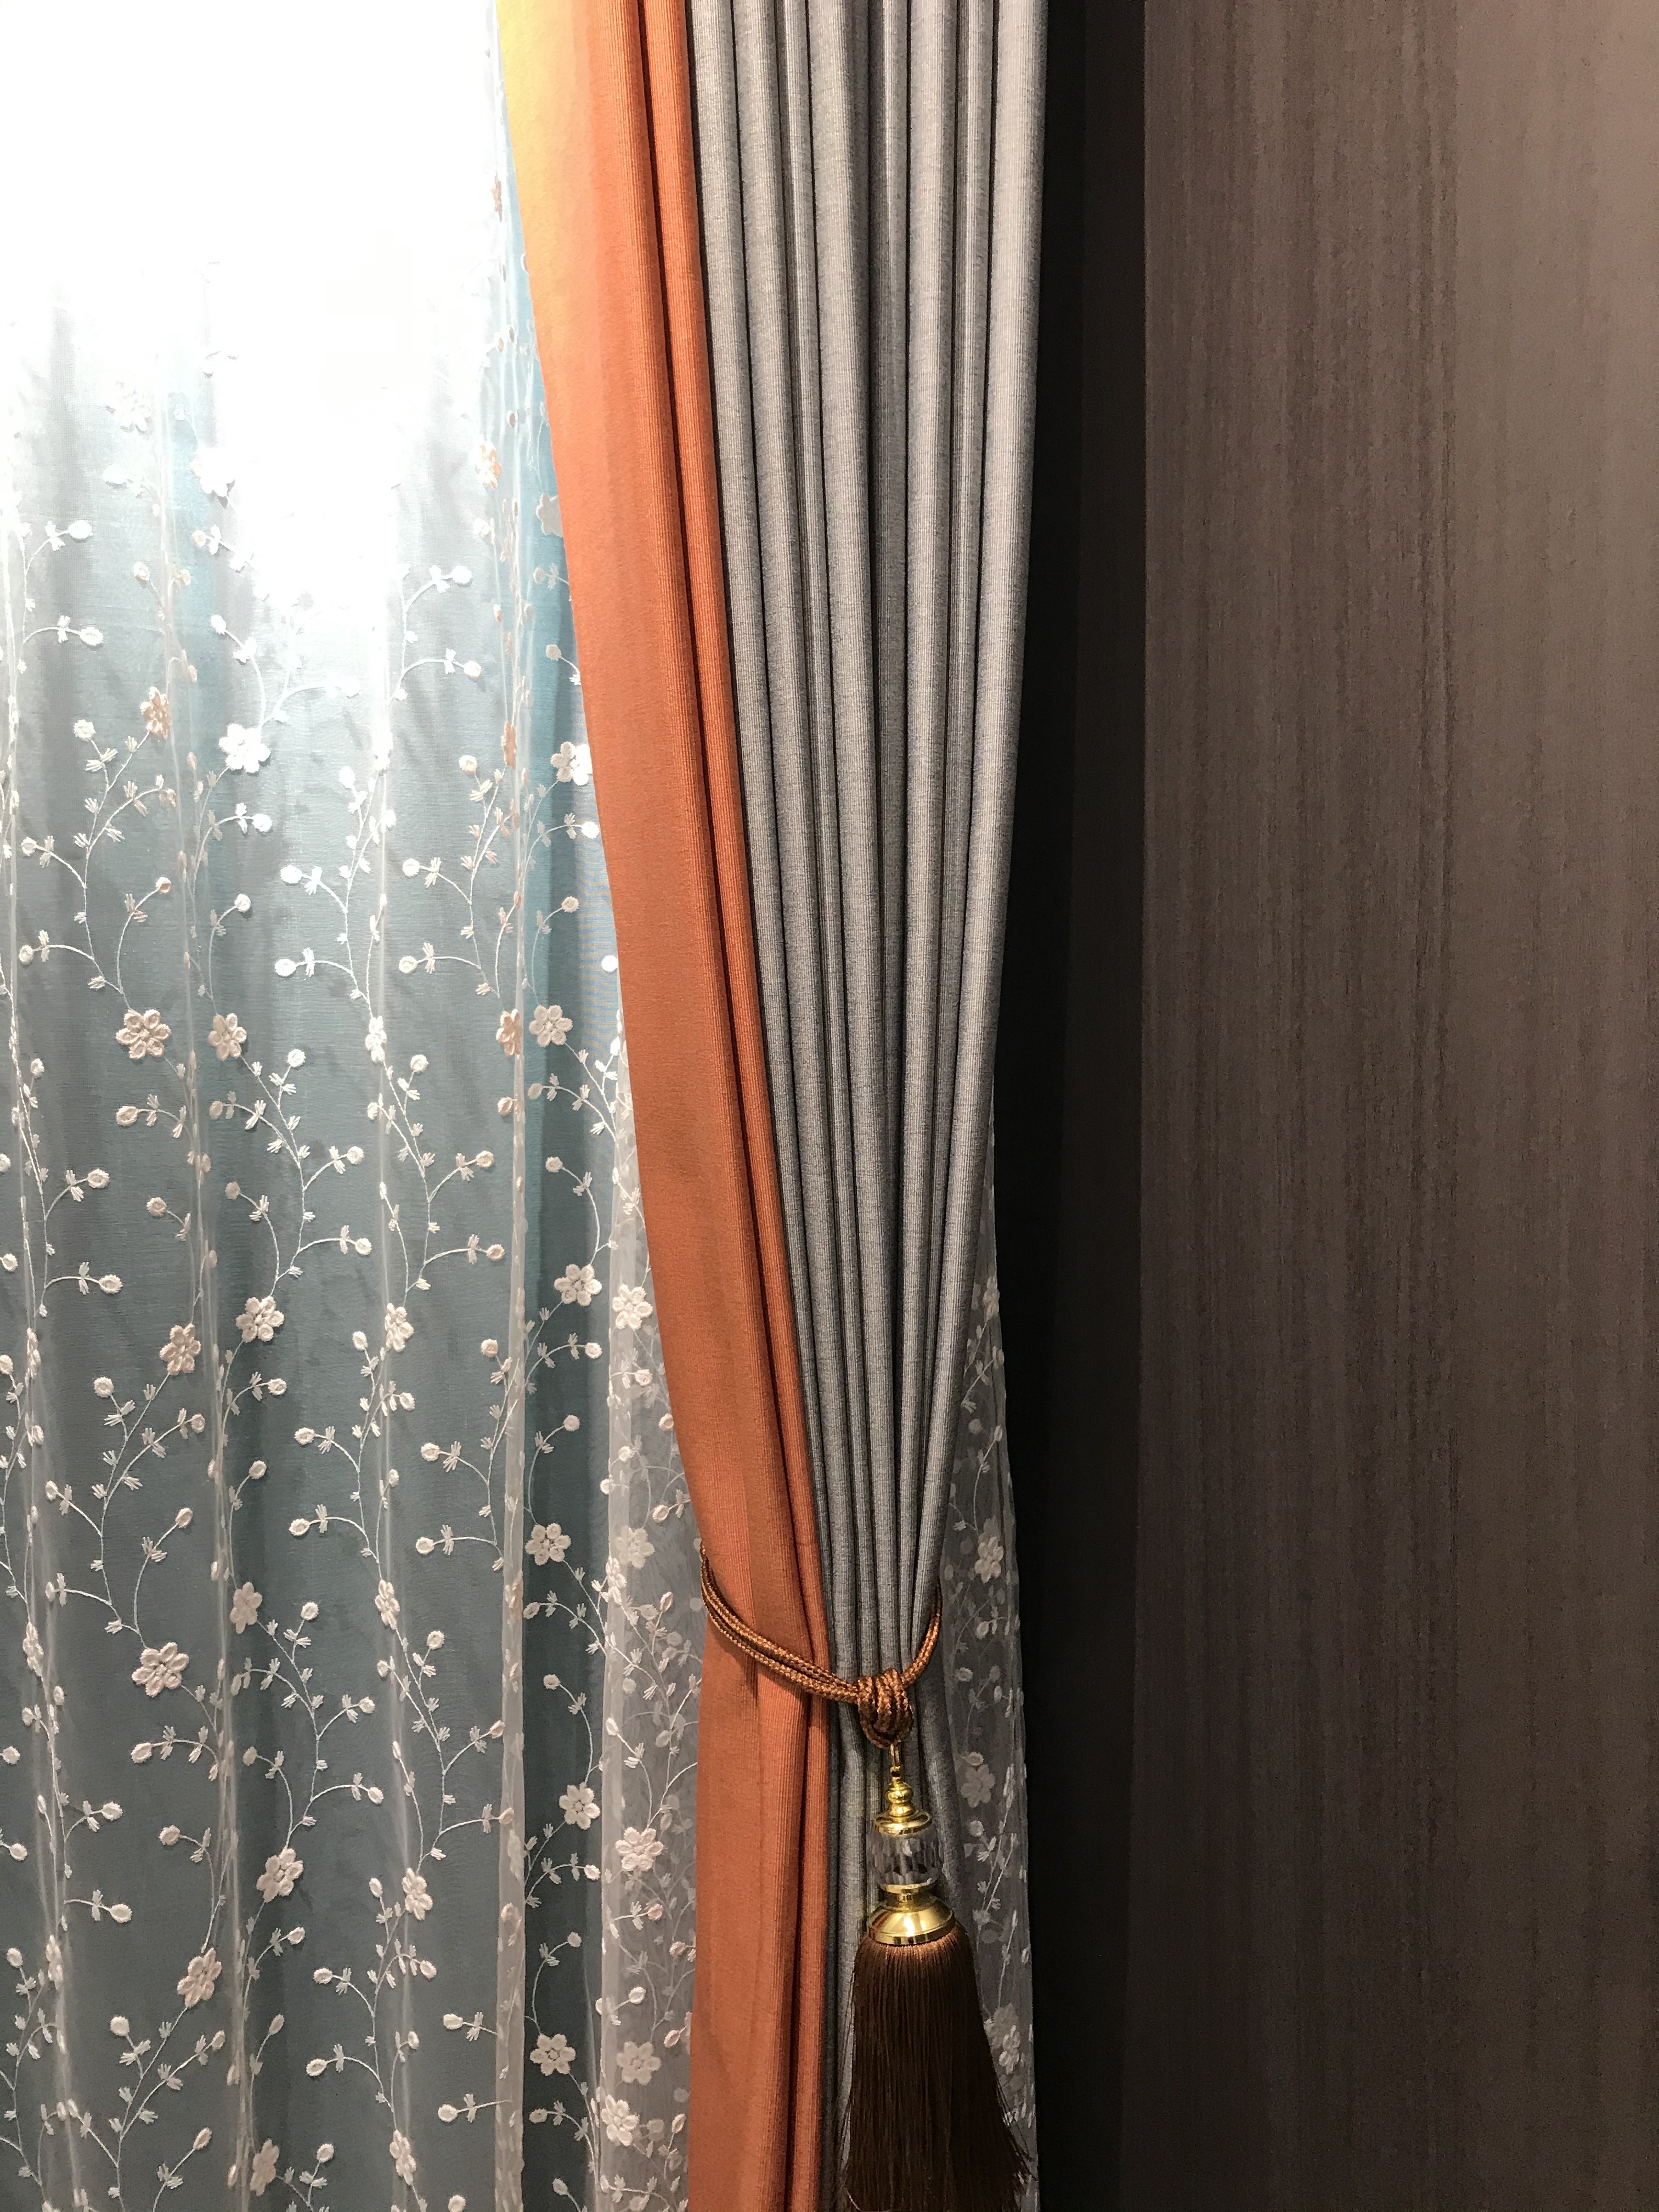 西雅图竖纹纯色窗帘灰色橙色拼接款客厅窗帘卧室现代简约遮光窗帘